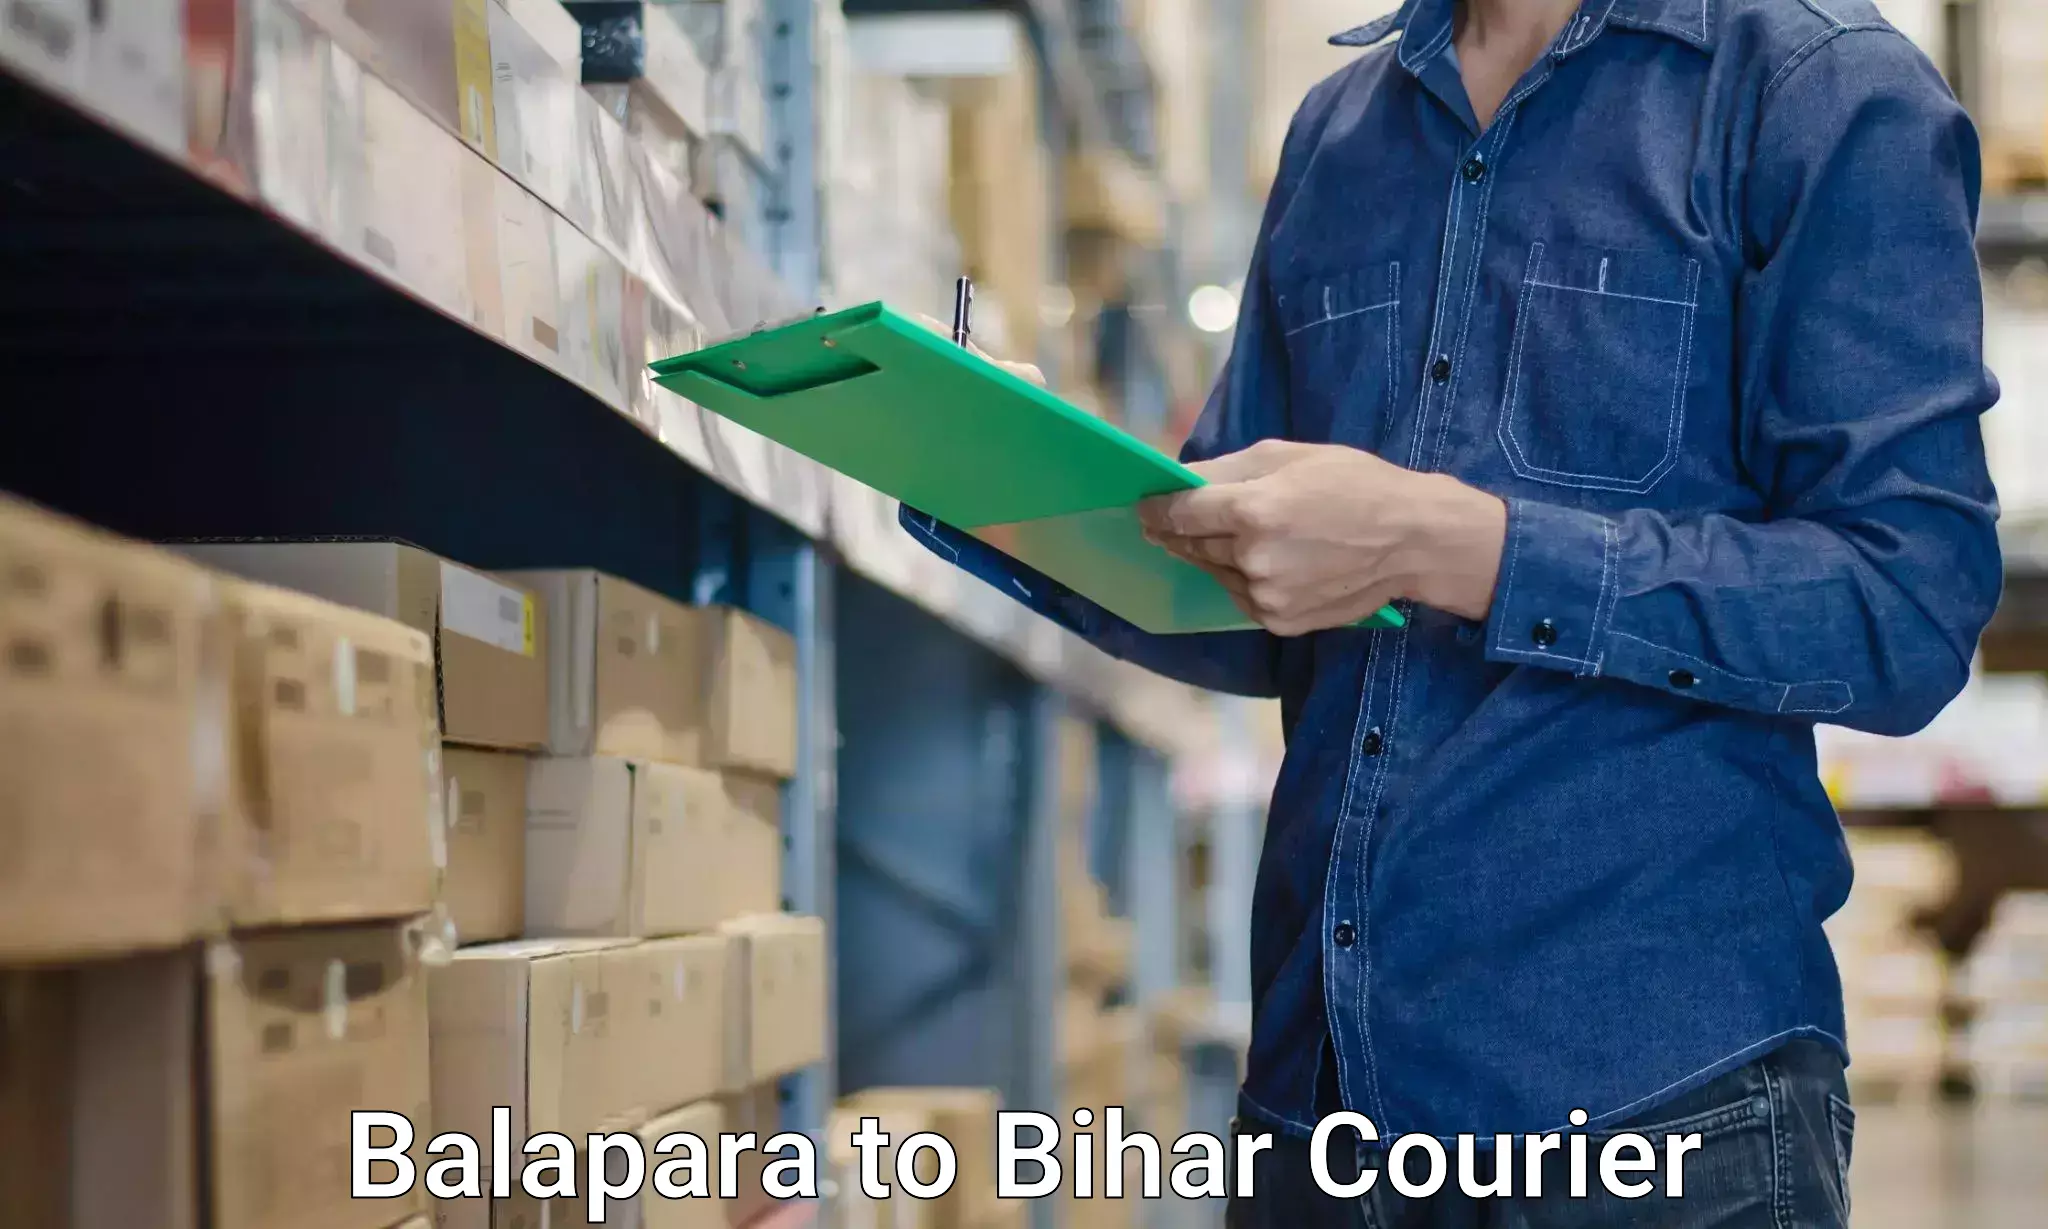 Furniture transport experts Balapara to Bakhri